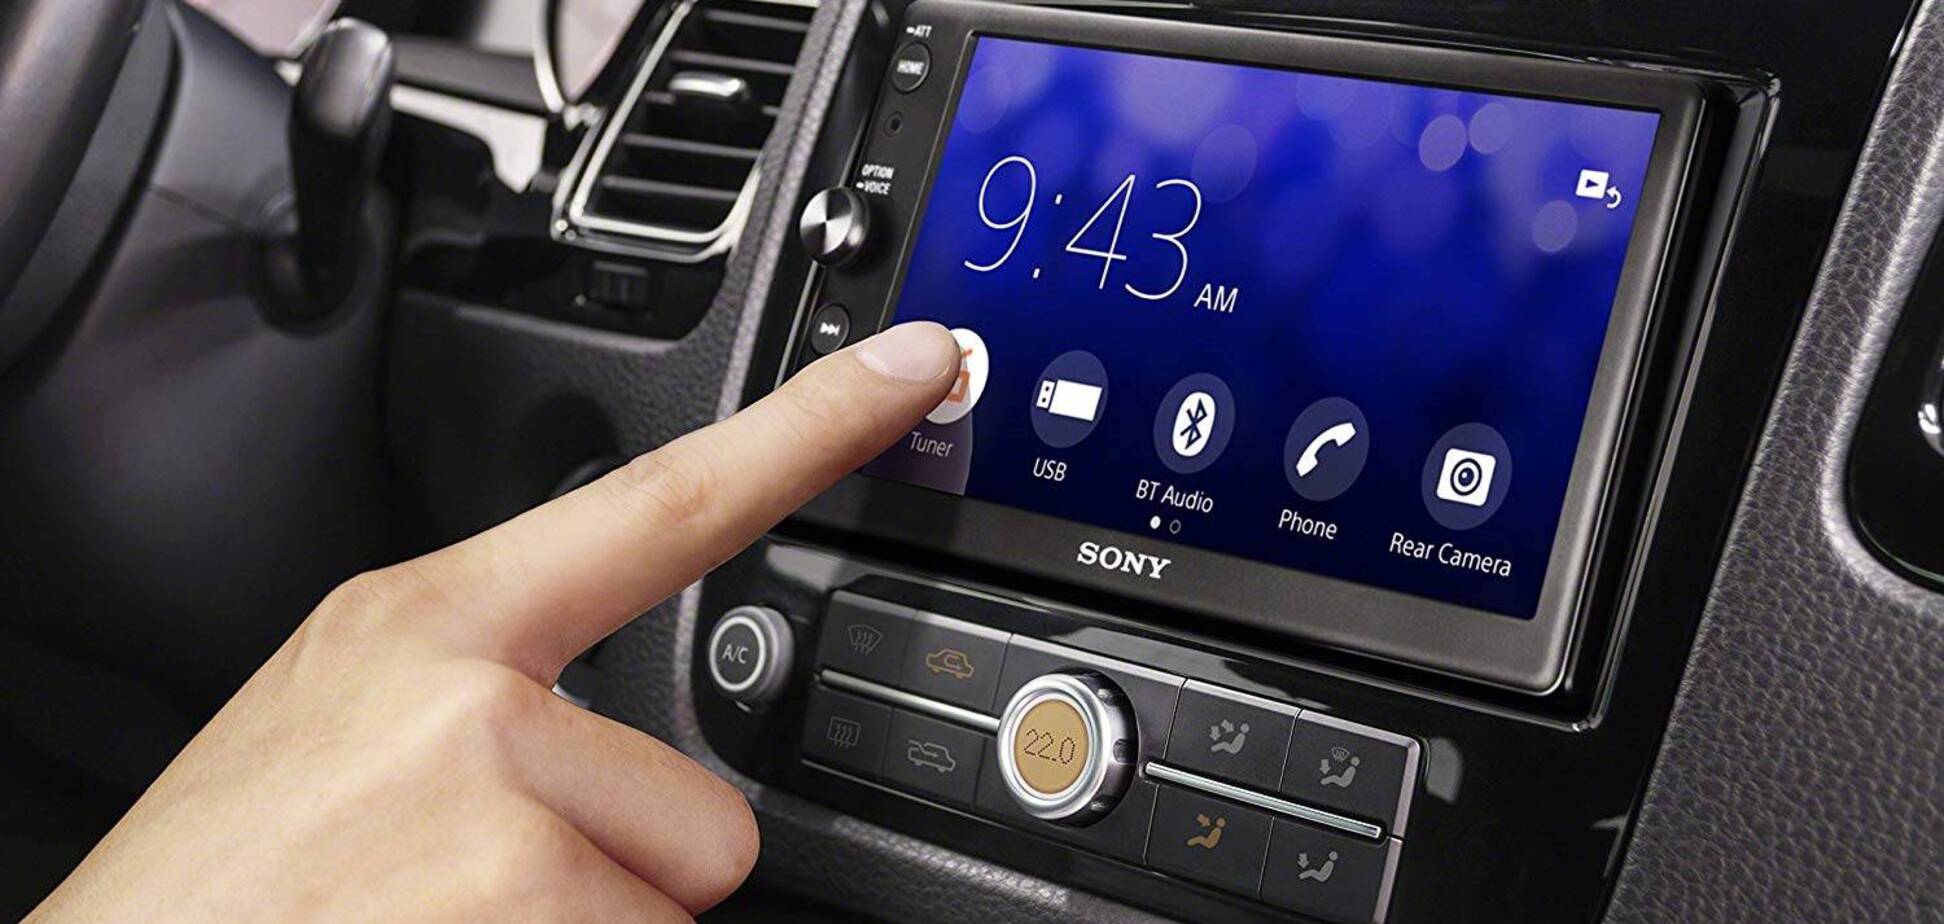 Мультимедийные системы автомобилей с экранами назвали смертельно опасными. Фото: autoevolution.com